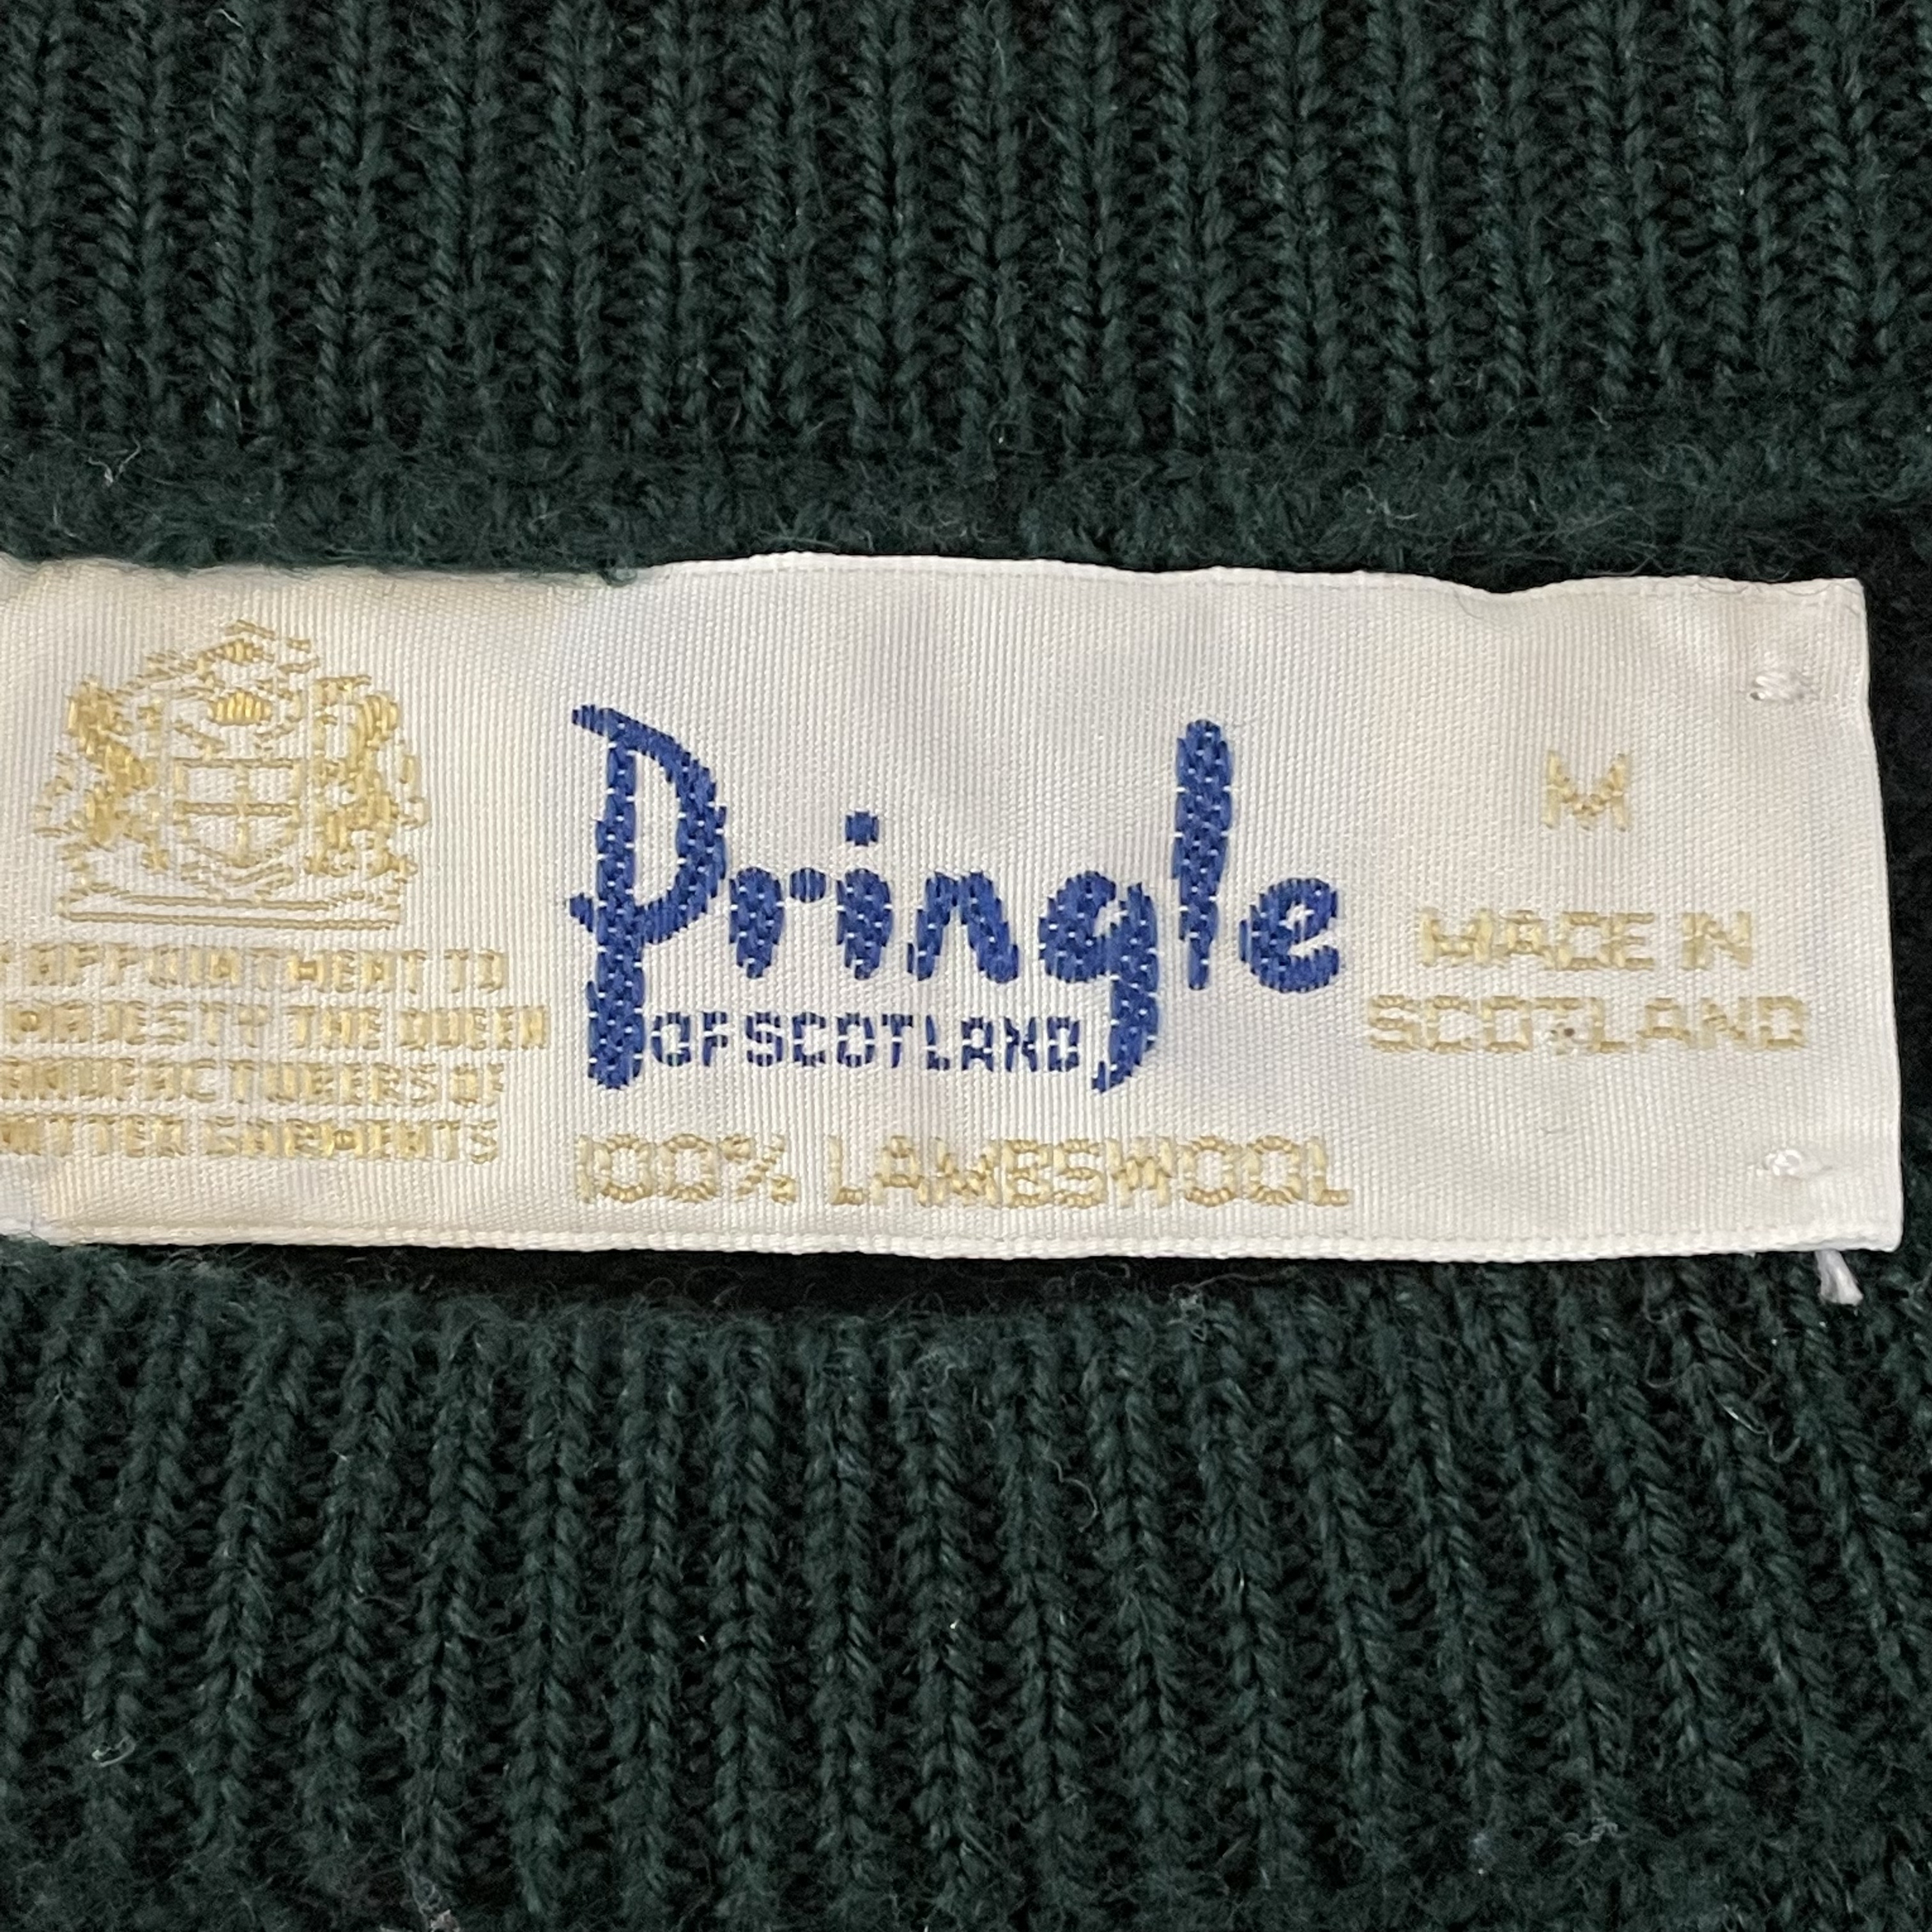 トップス【Pringle】80s スコットランド製 ライン ニット セーター EU